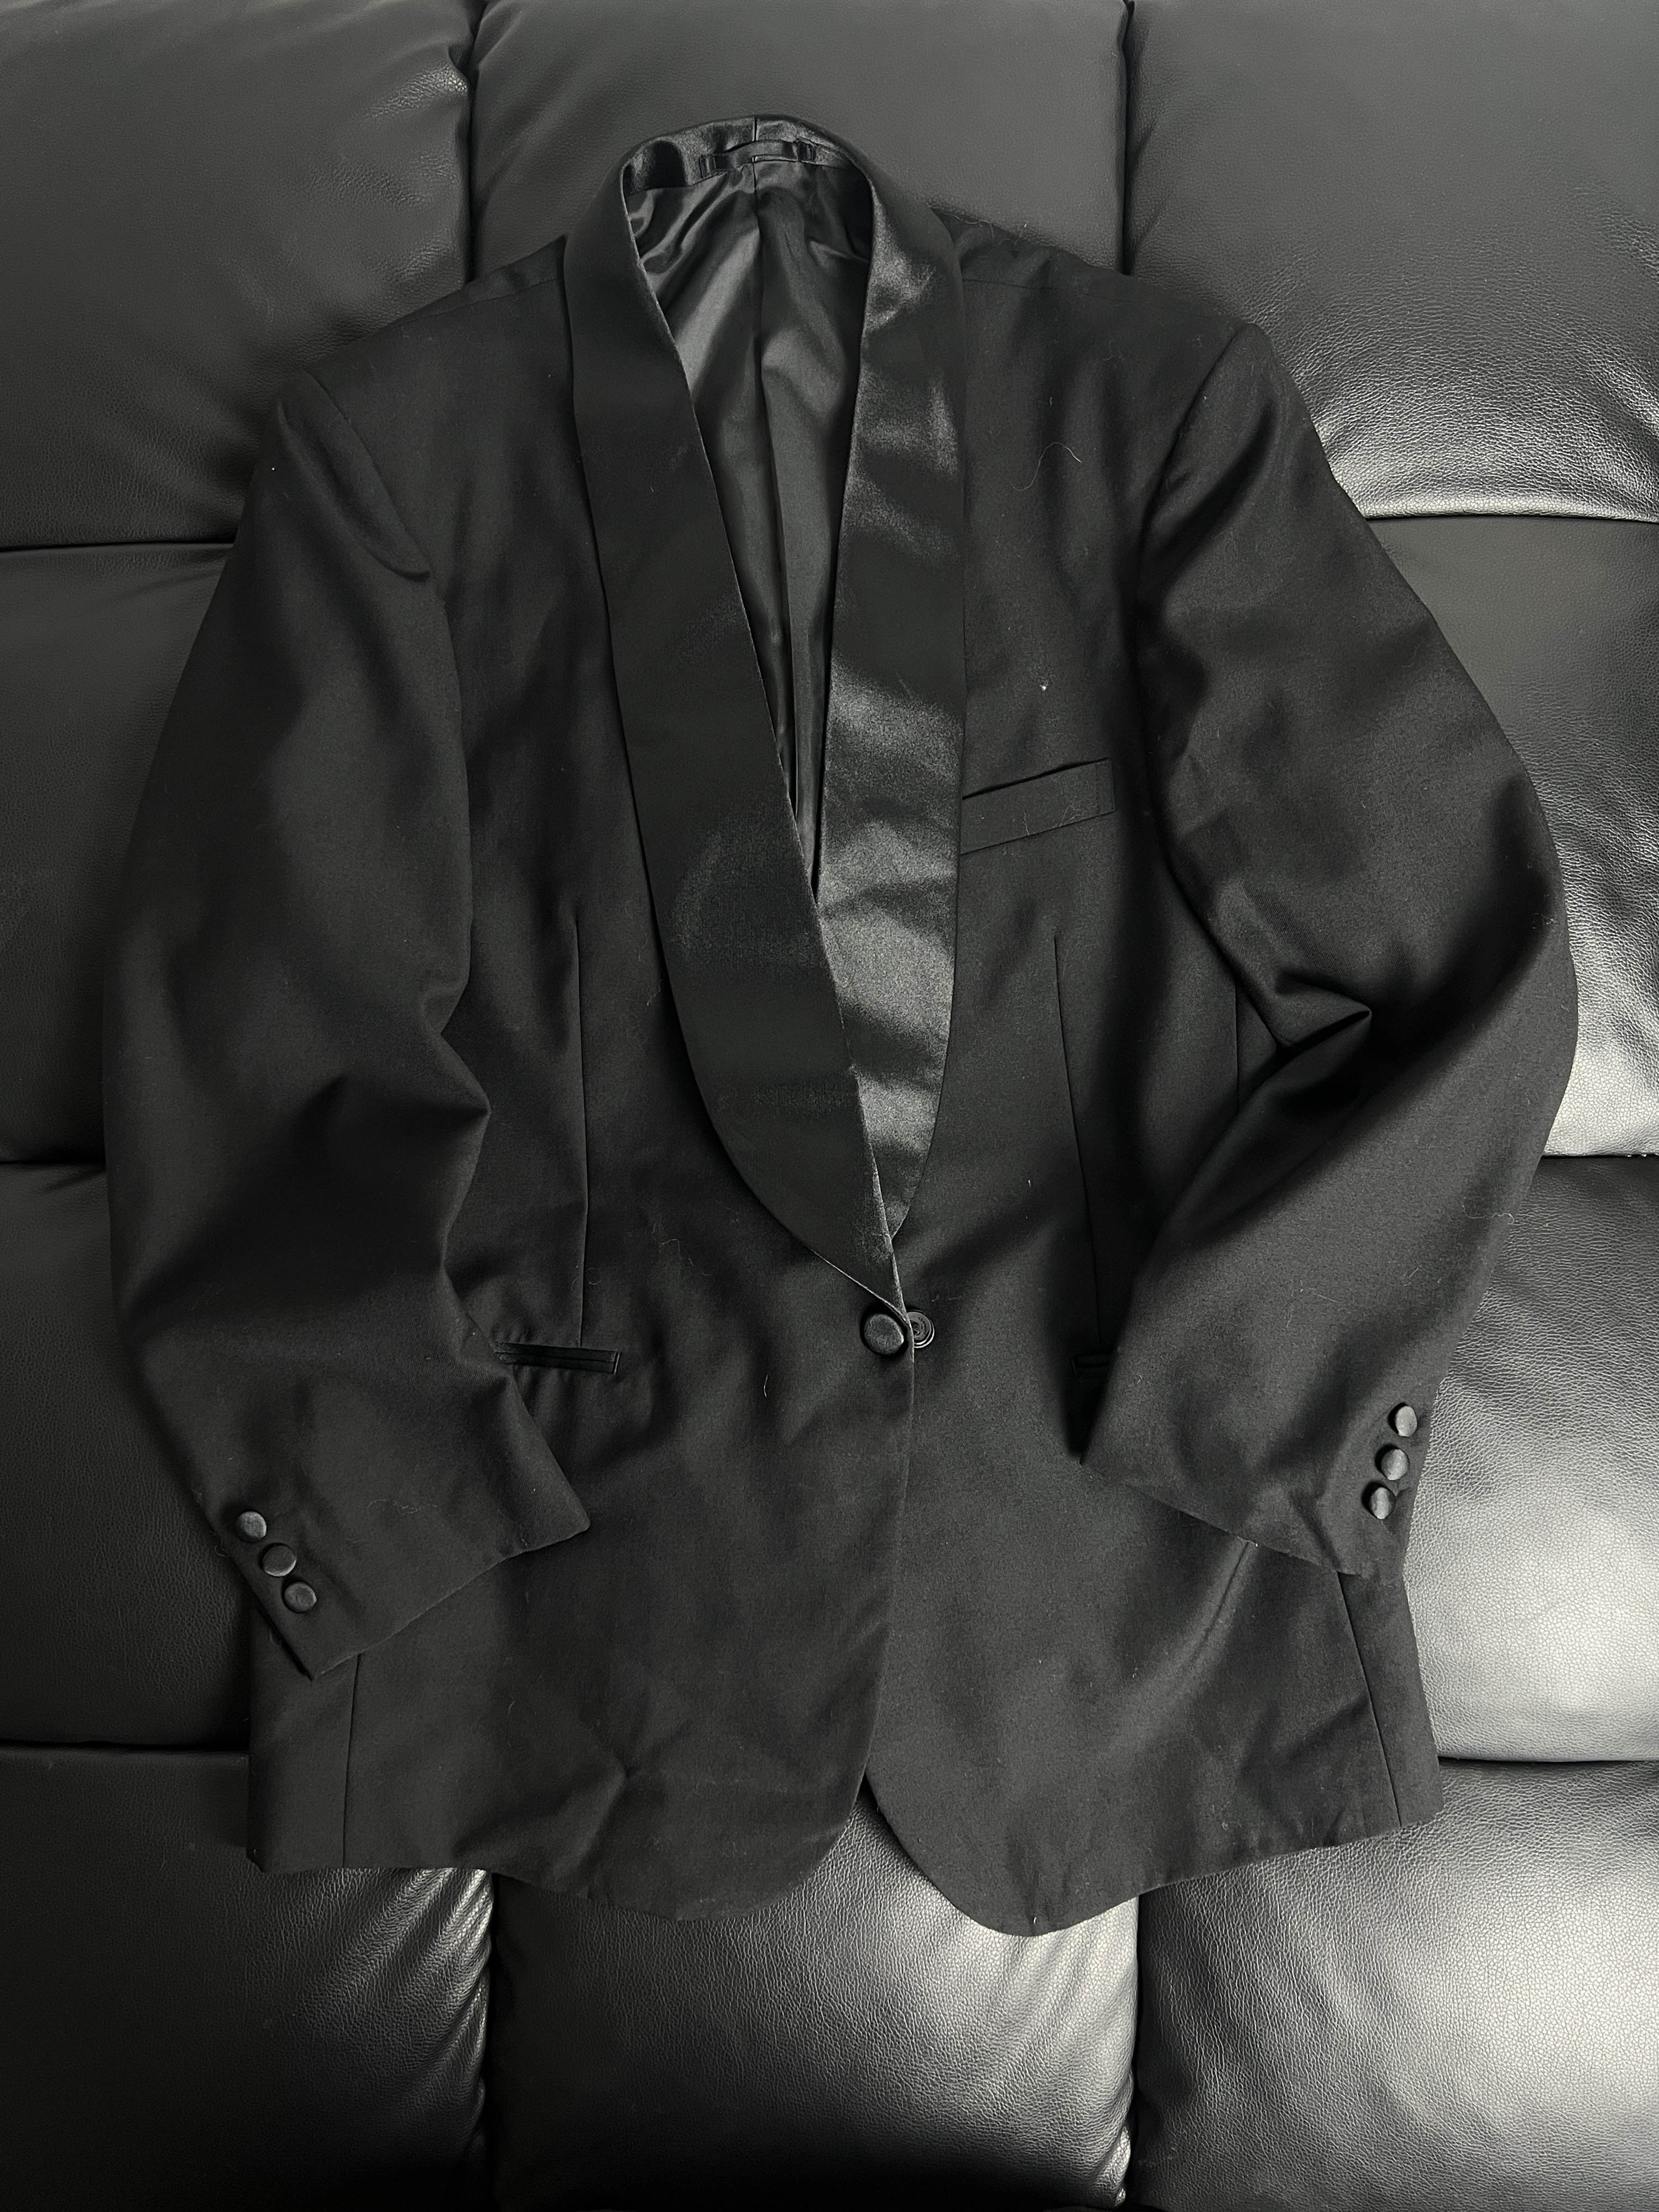 vintage tuxedo jacket